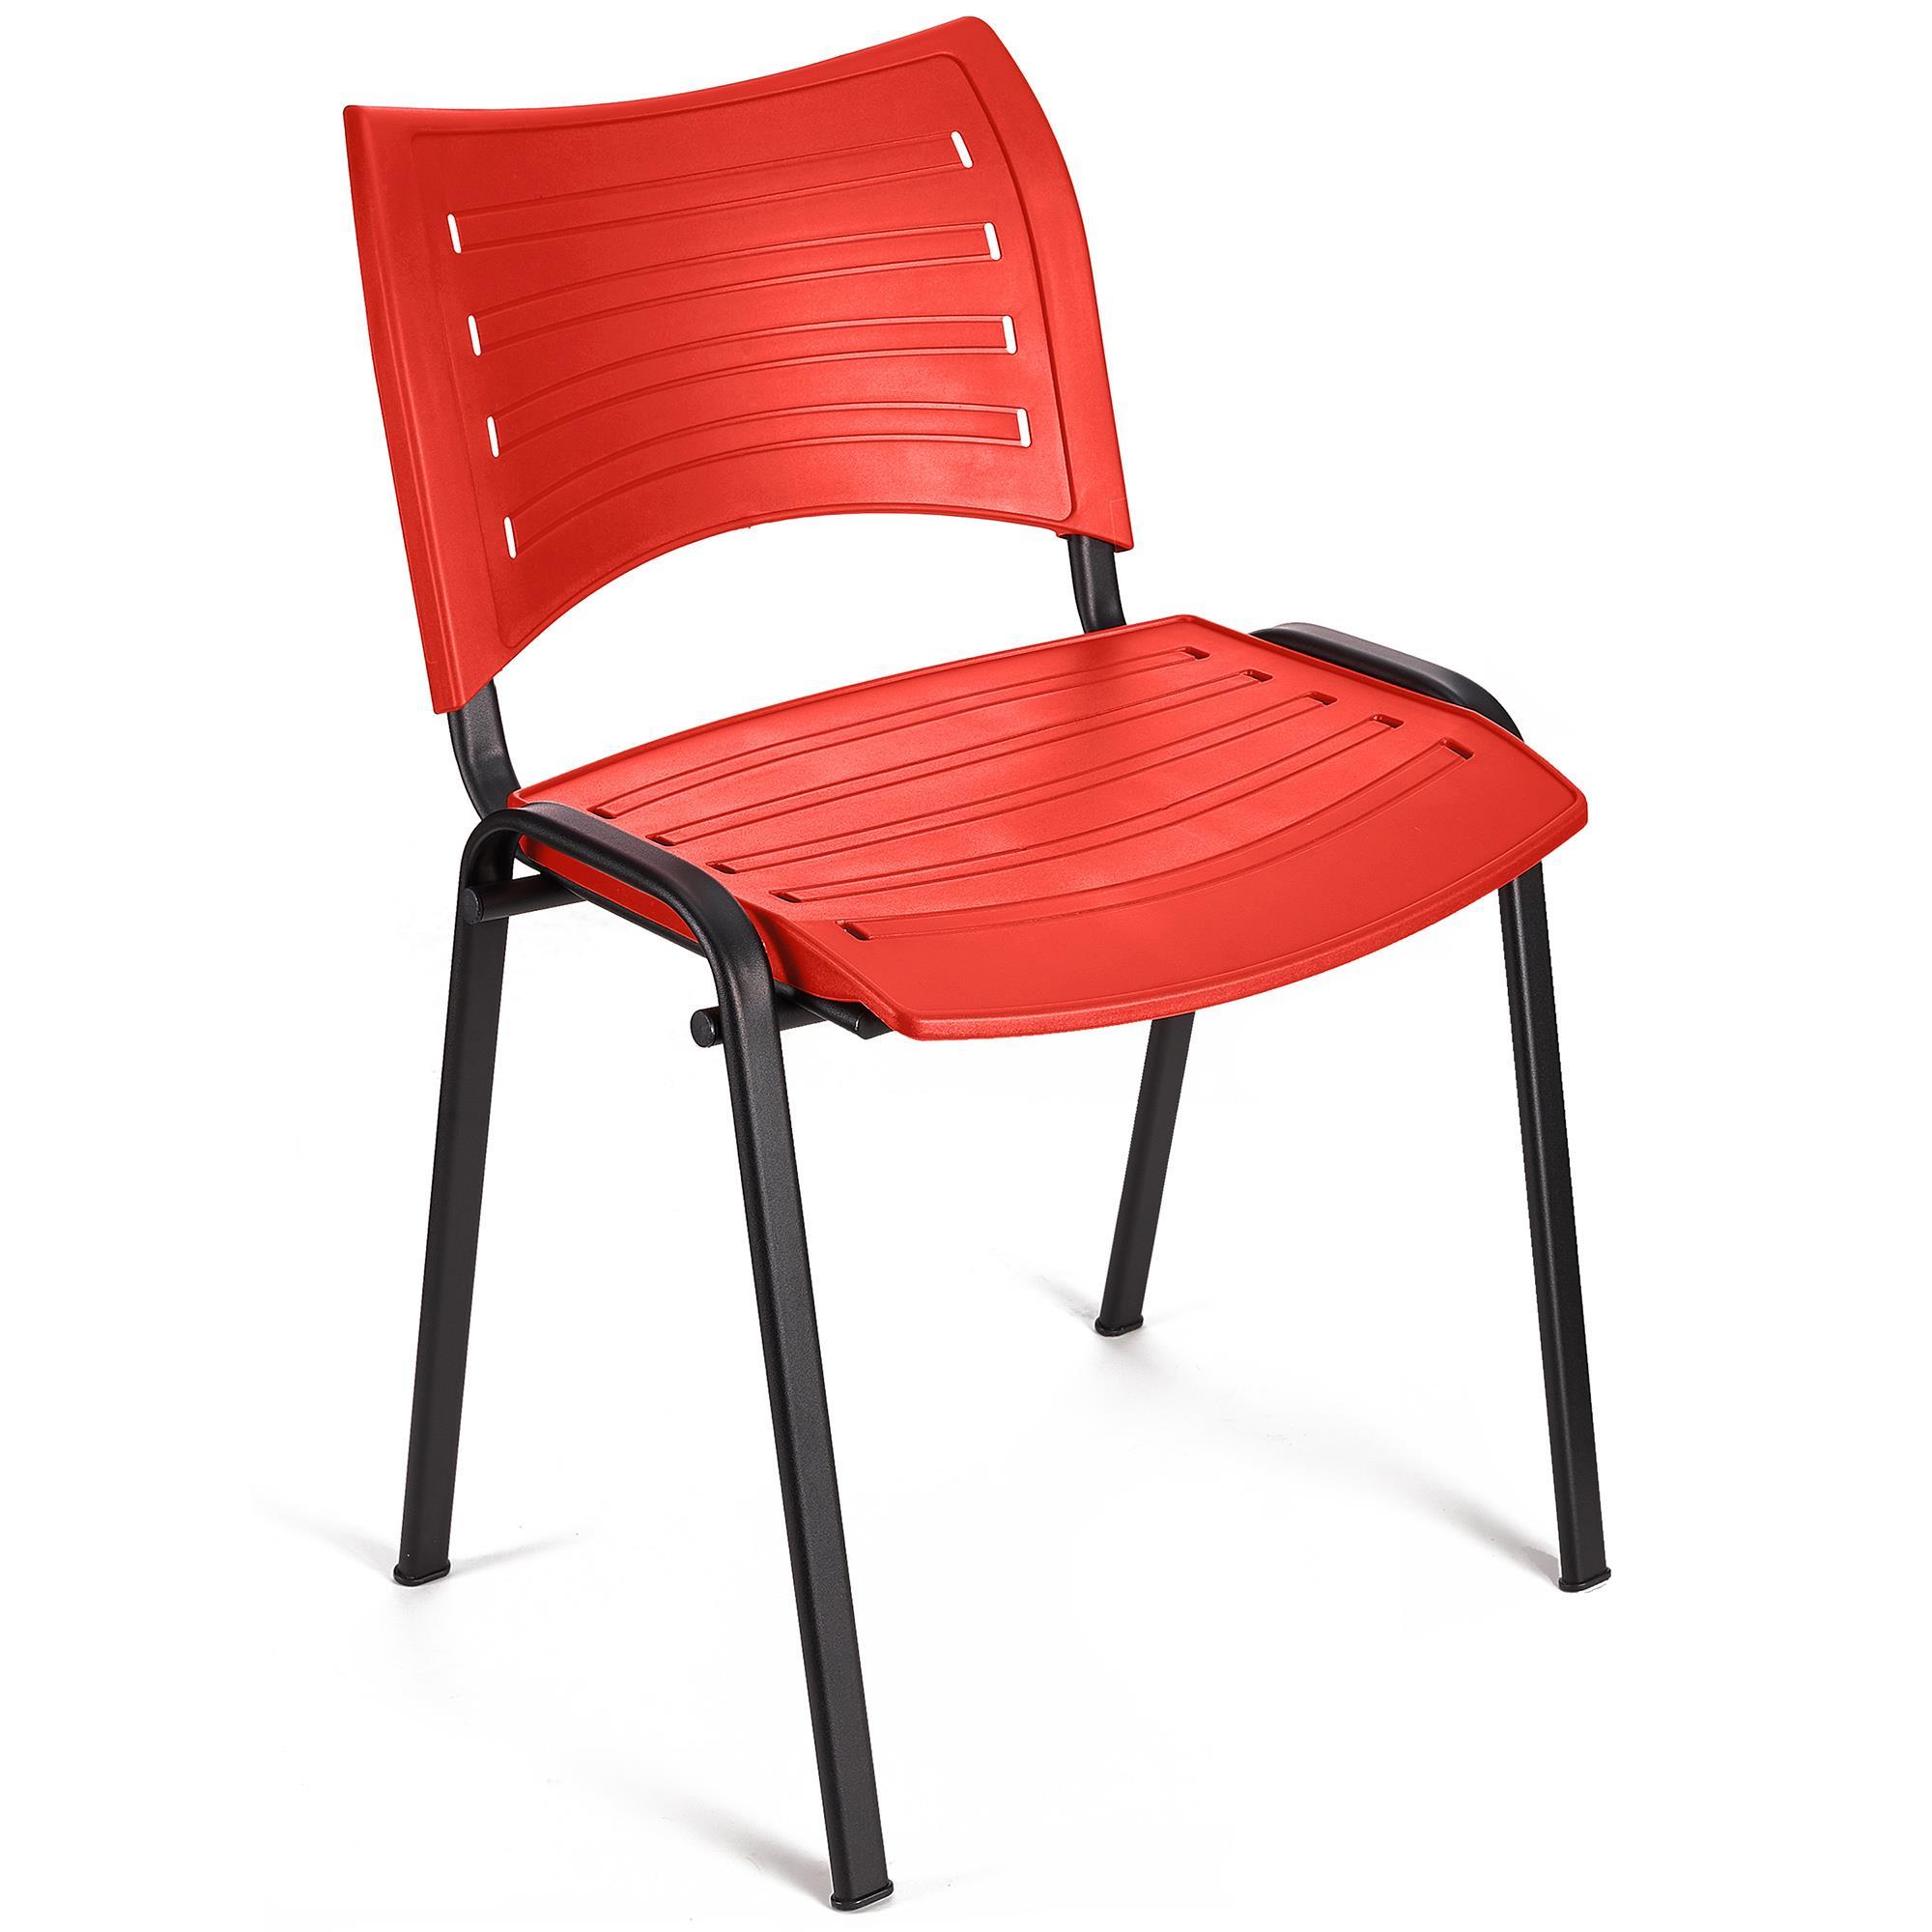 Cadeira de Visita ELVA, Empilhável e Prática, Confortável, Pernas Pretas, Cor Vermelho